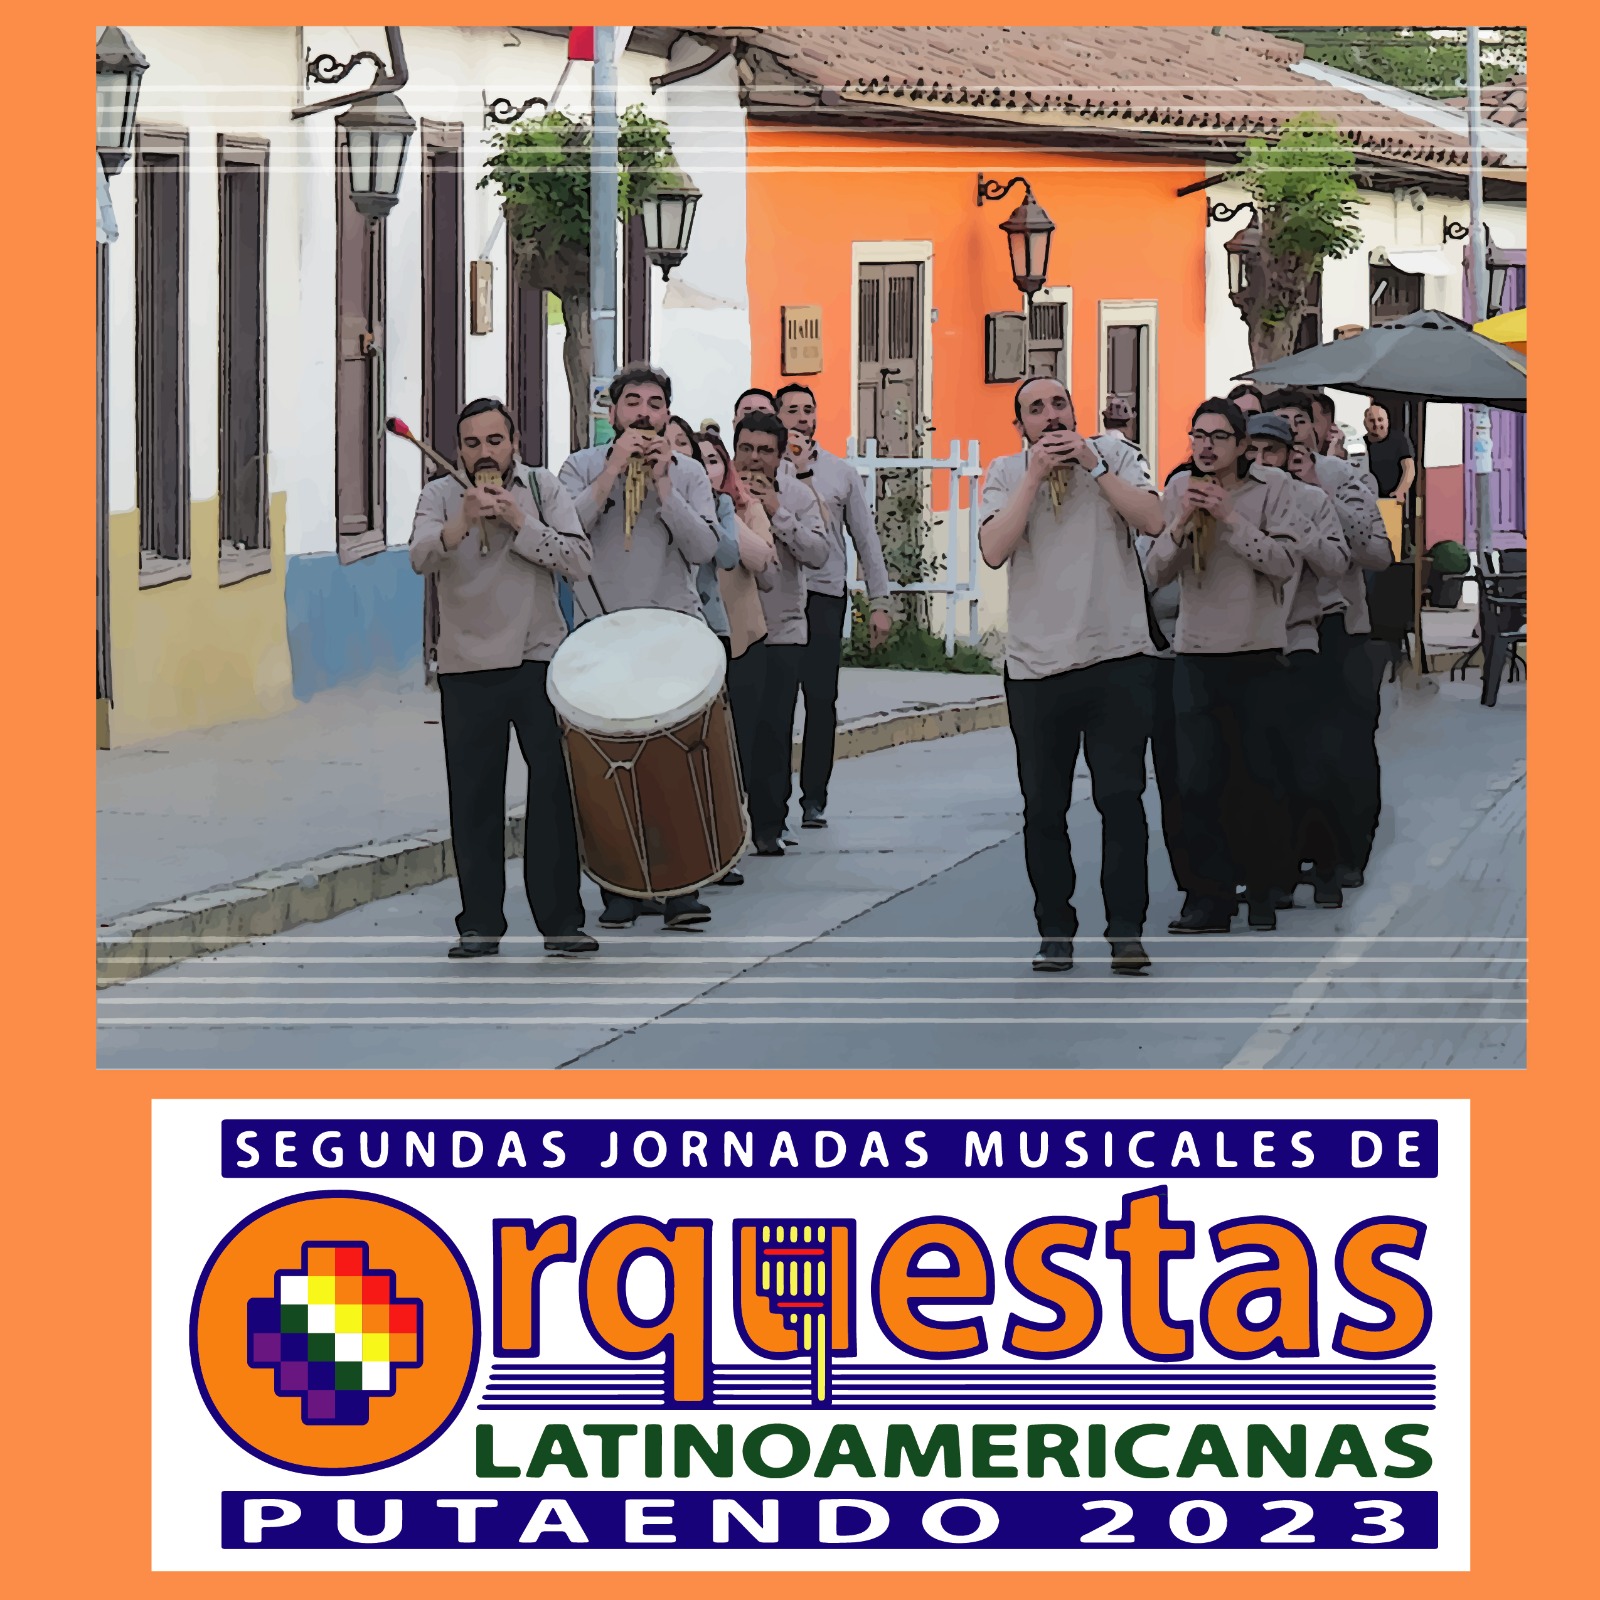 PUTAENDO: Se prepara para inolvidables conciertos en el marco de las “Segundas Jornadas de Orquestas Latinoamericanas 2023”